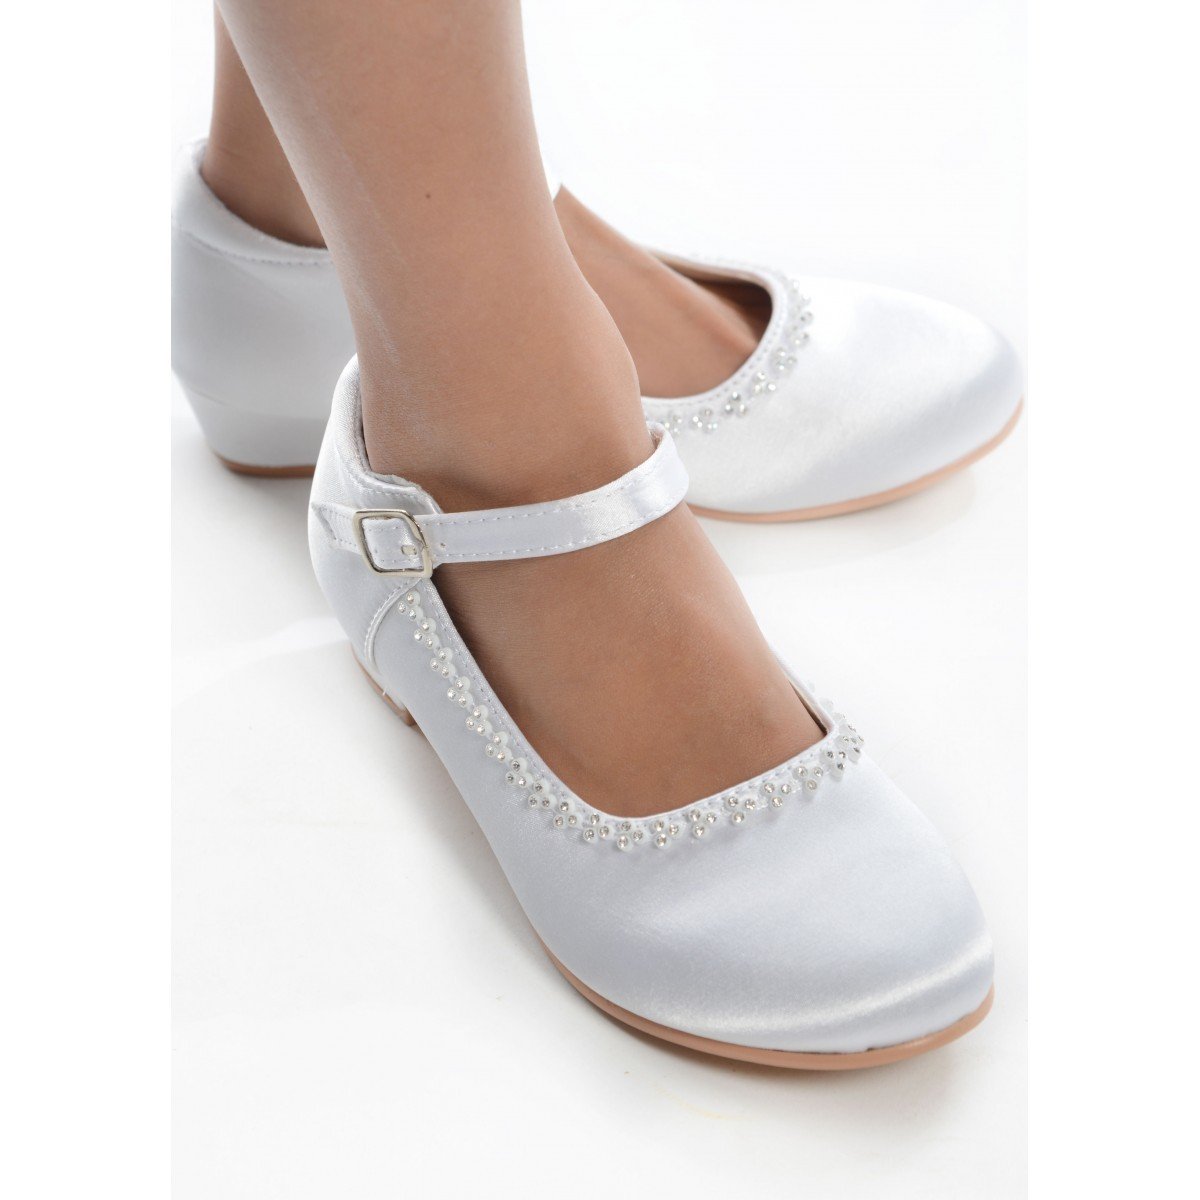 white communion shoes size 2